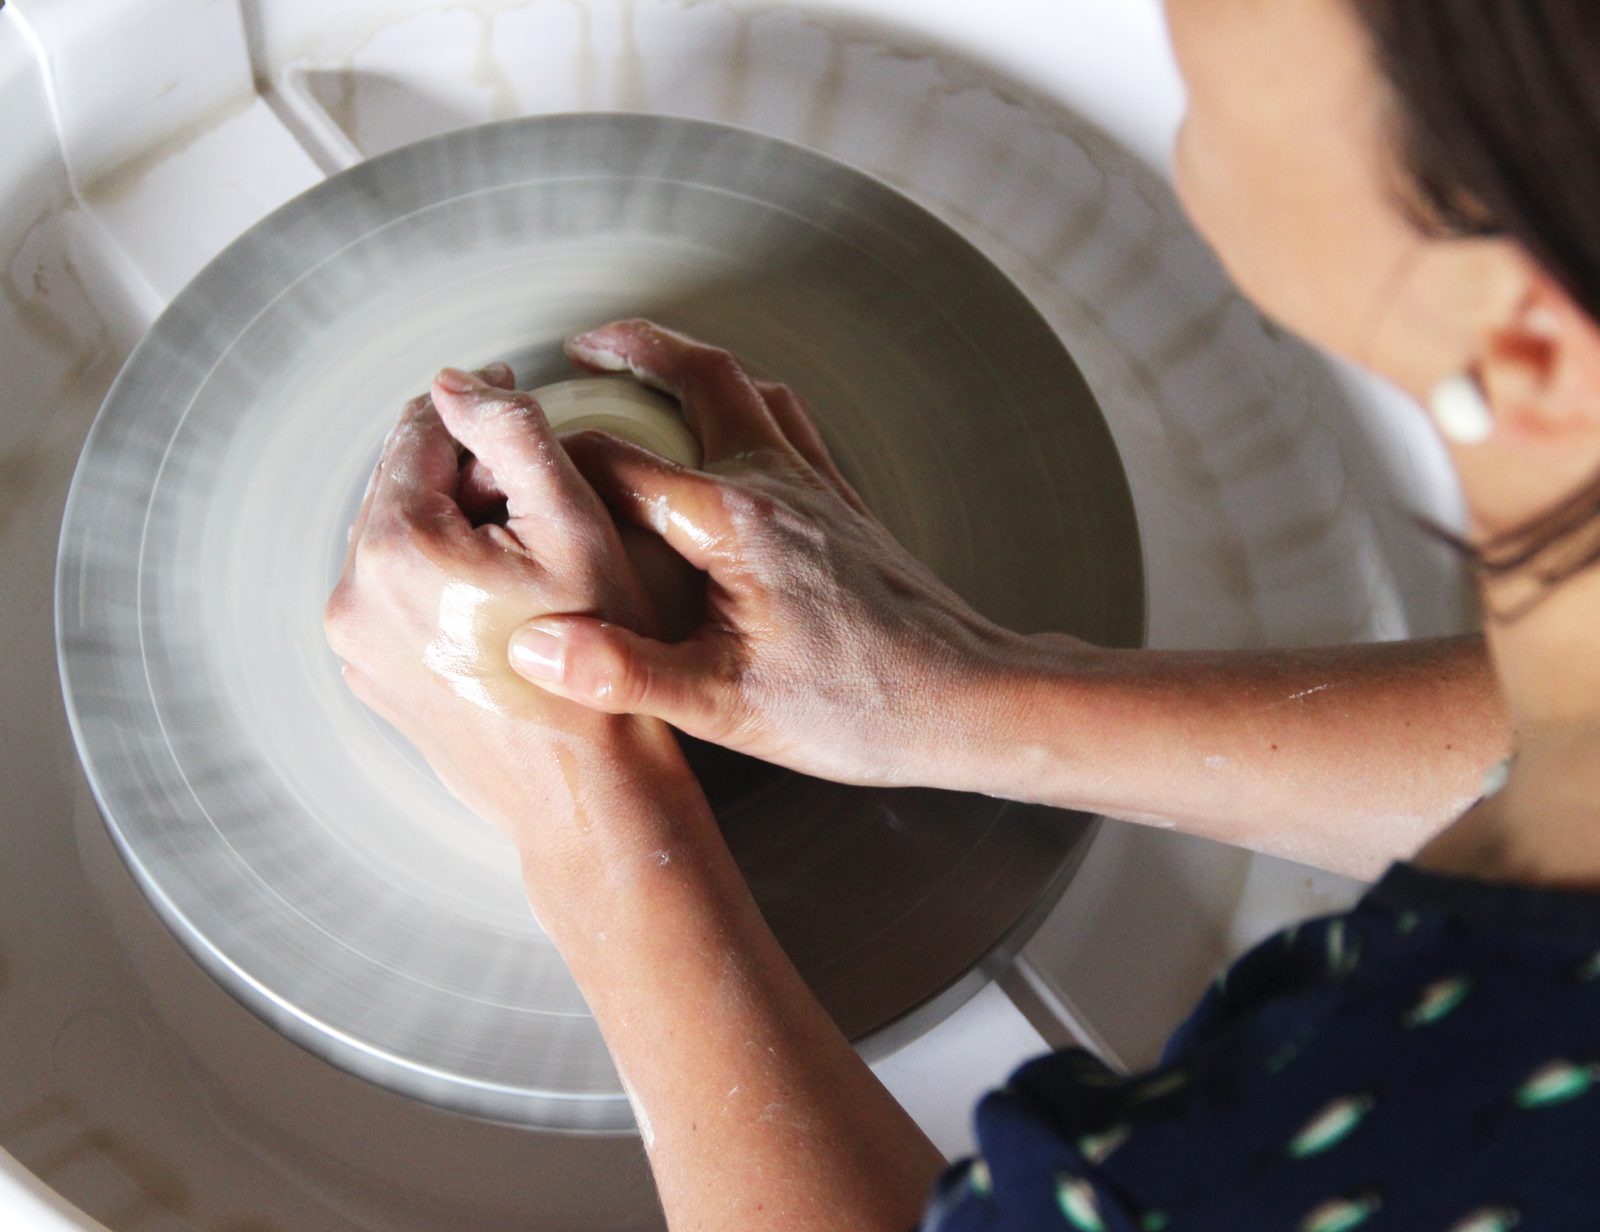 mathûvû hortense céramique lyon poterie céramique